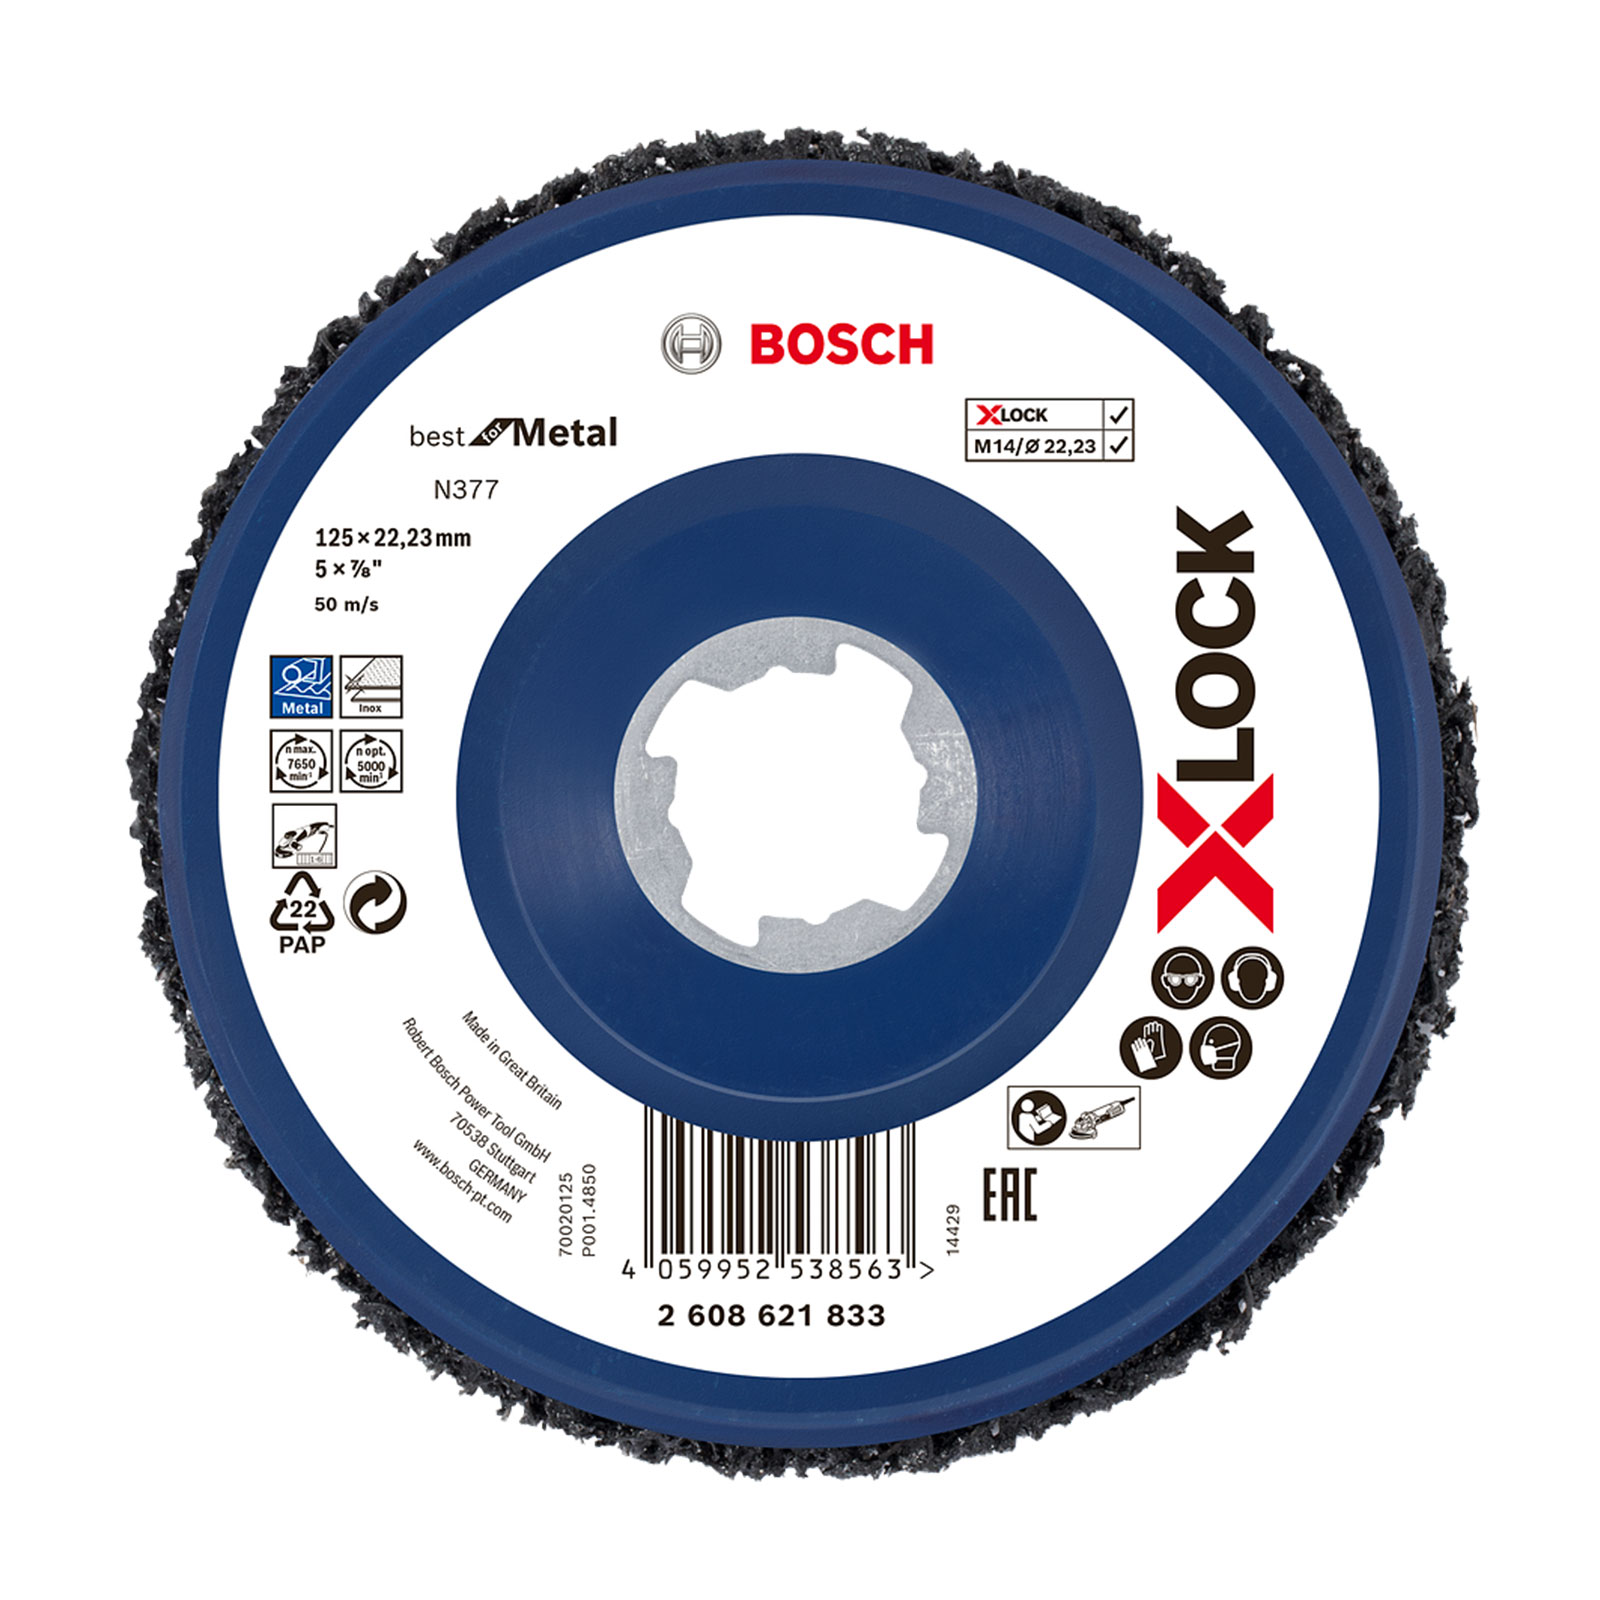 Bosch Professional X-LOCK Grobreinigungsscheibe N377, 125mm Schleifscheibe